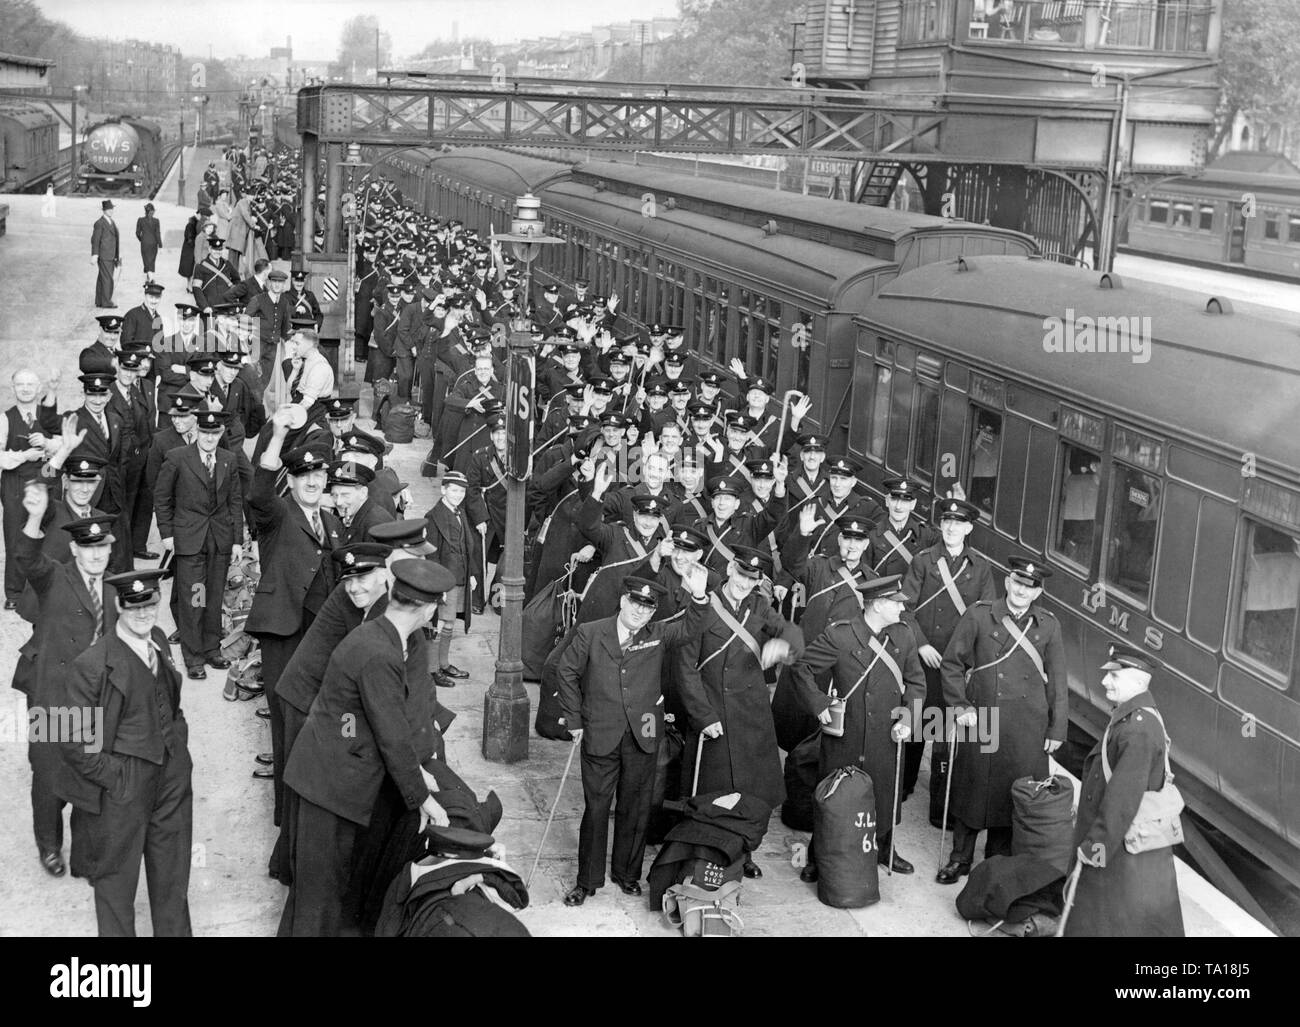 1200 Mitglieder der Royal British Legion Ankommen bei Addison Road Station in London am 12. Oktober 1938. Sie waren in der Tschechoslowakei geschickt, um die ordnungsgemäße Umsetzung der Vereinbarungen des Münchener Abkommens zu überwachen, und die Polizei Aufgaben wahrzunehmen. Stockfoto